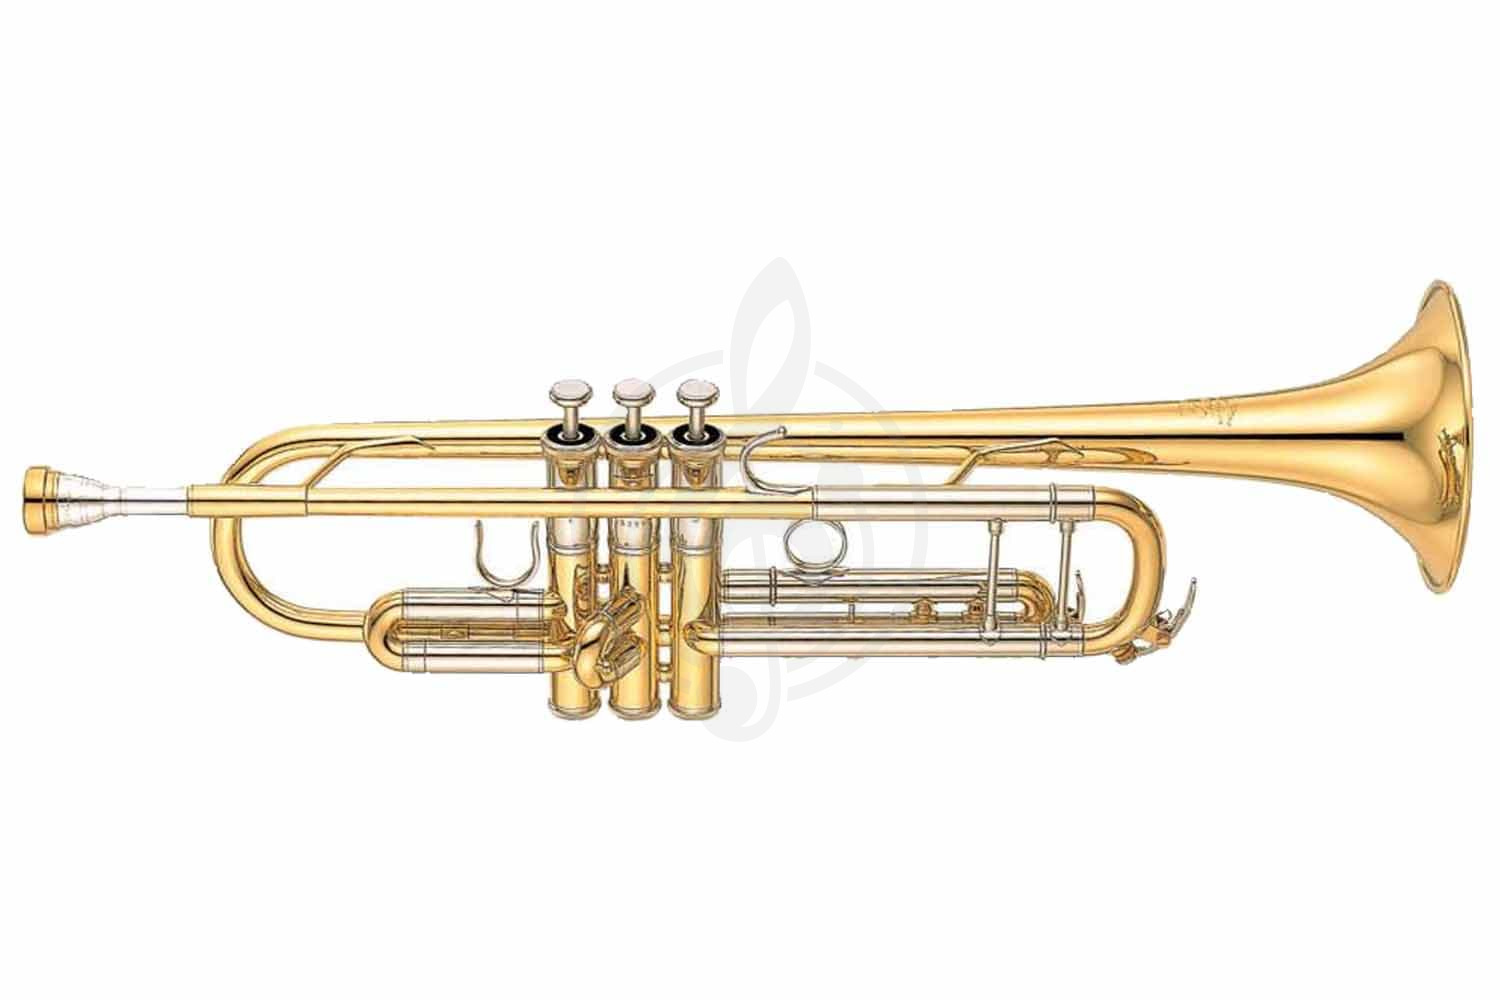 Труба Трубы Yamaha Yamaha YTR-8345G - труба Bb профессиональная, тяжёлая,  gold brass bell, чистый лак YTR-8345G//04 - фото 1